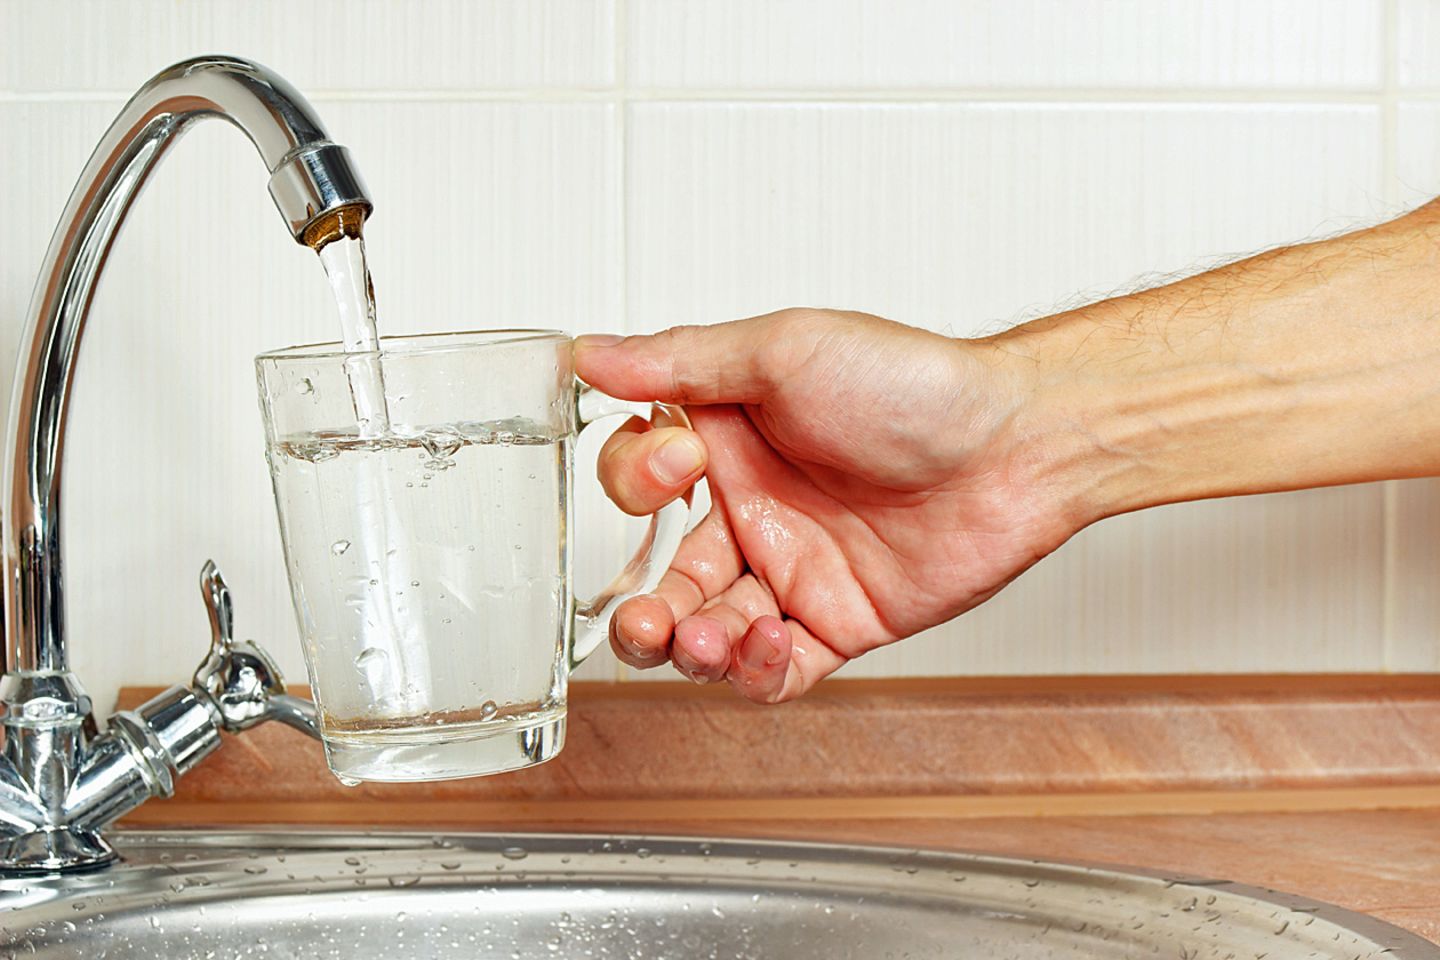 В чайник налили 3 литра холодной воды. Вода из под крана. Вода из крана в стакан. Наливает воду. Воду наливают в стакан.